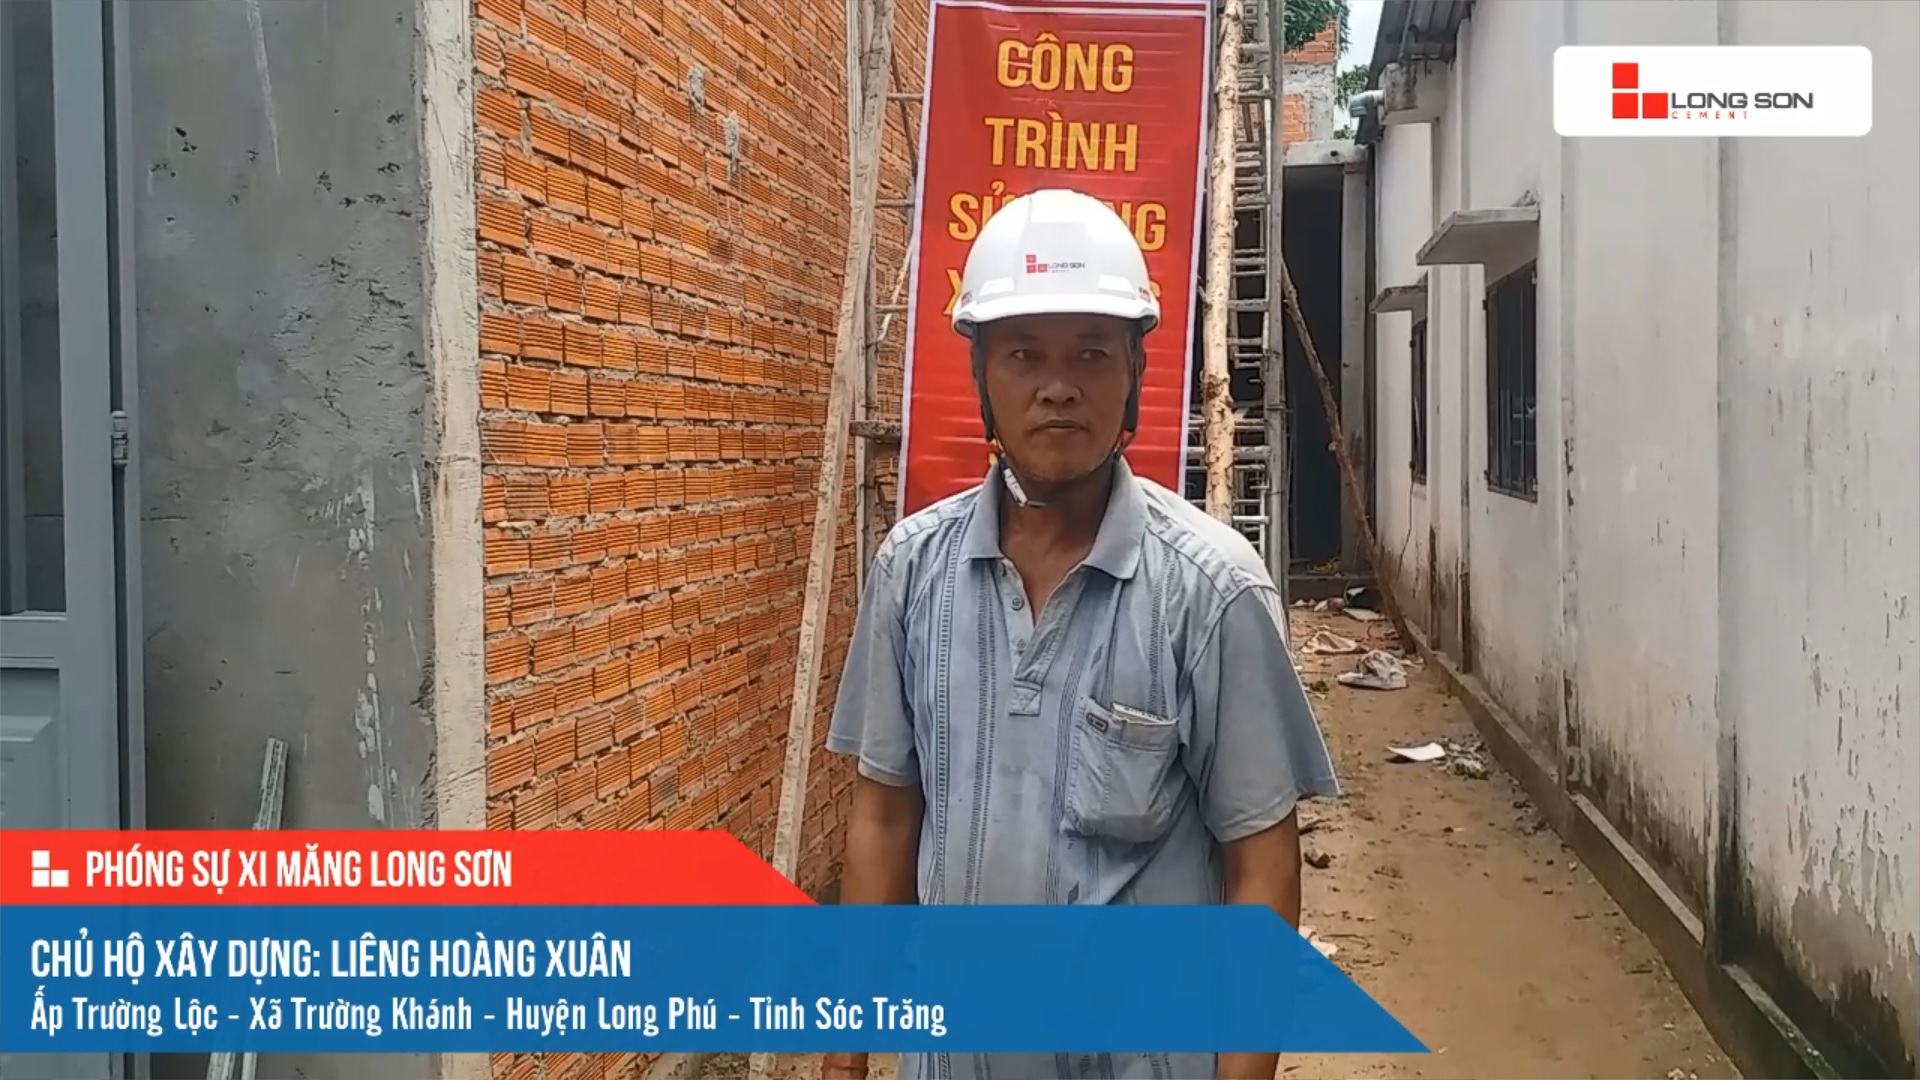 Phóng sự công trình sử dụng Xi măng Long Sơn tại Sóc Trăng 11.06.2021